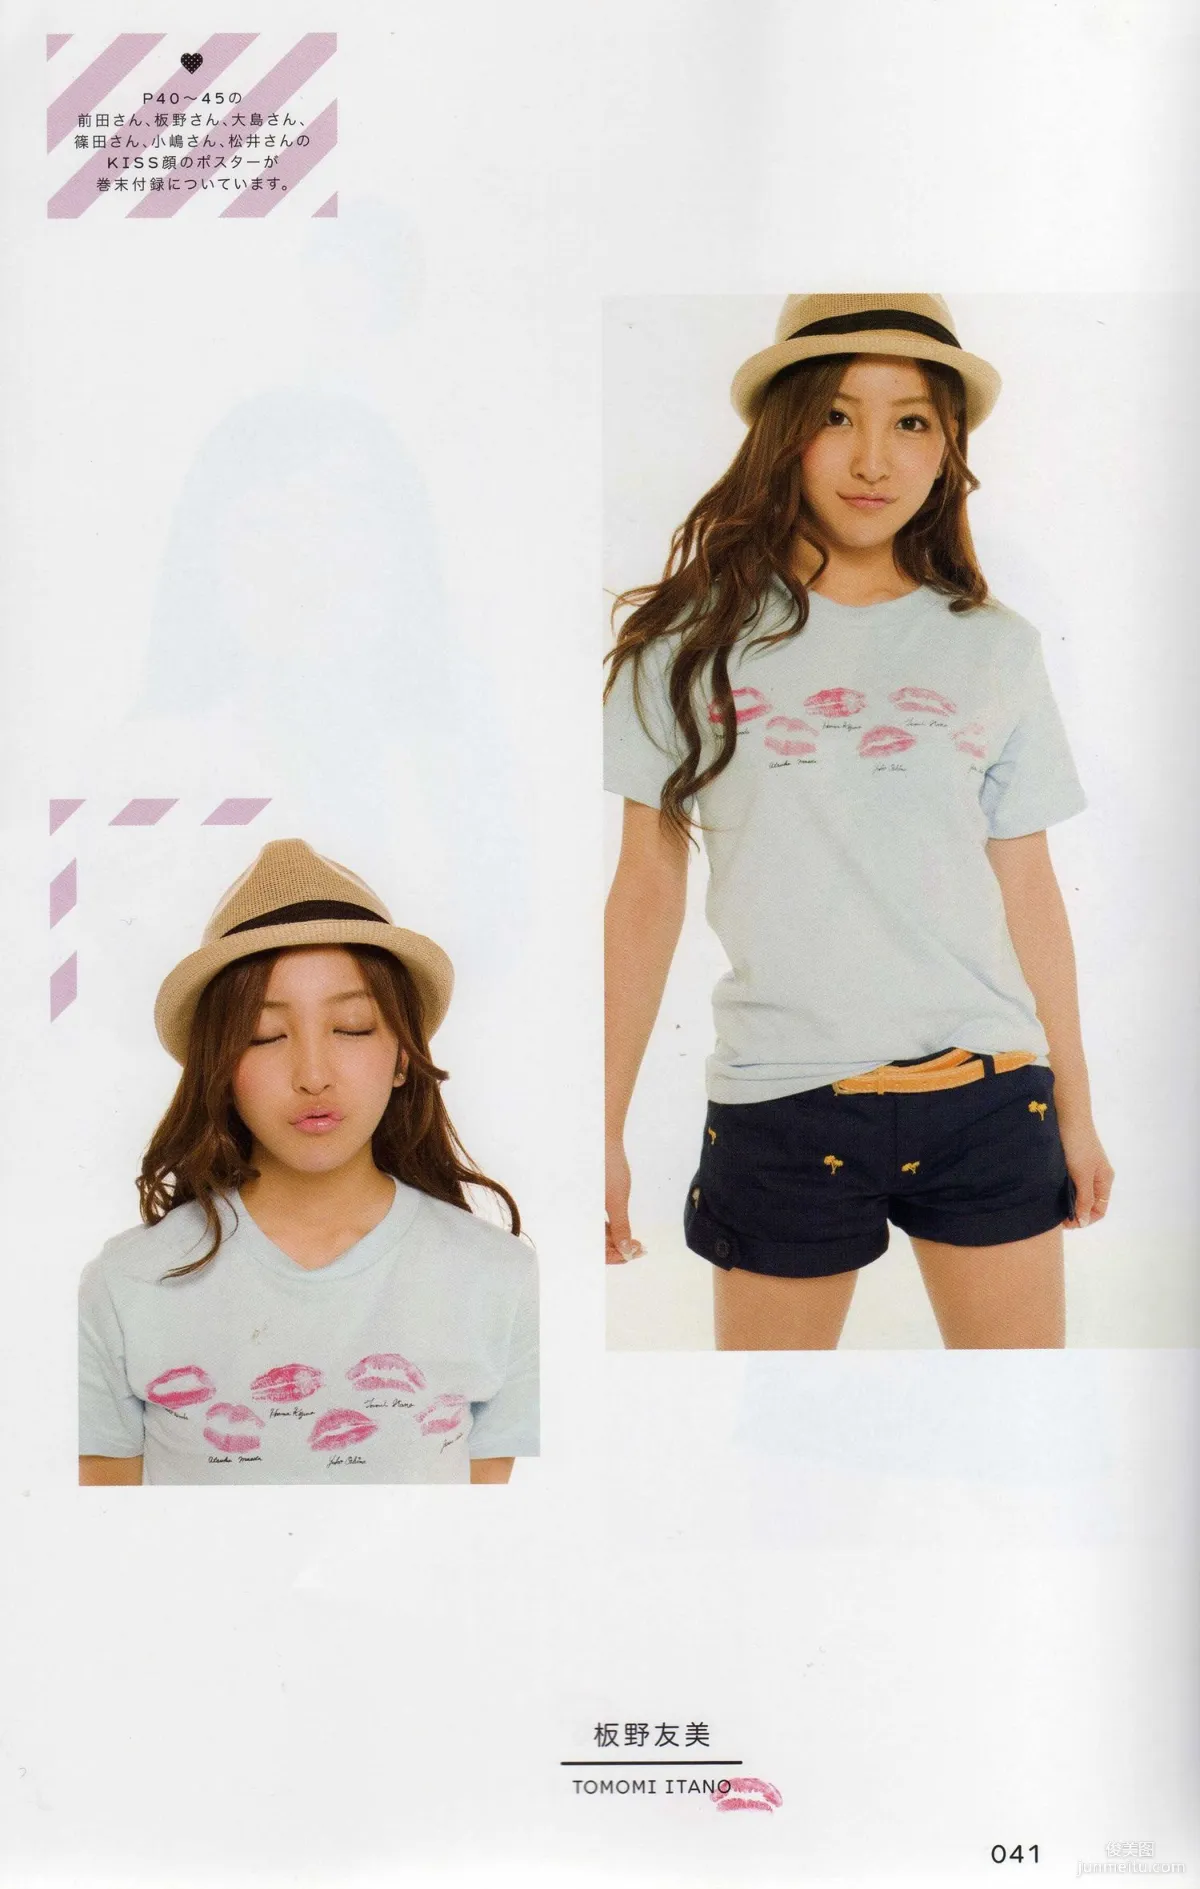 日本AKB48女子组合《2013 Fashion Book内衣秀》写真集35